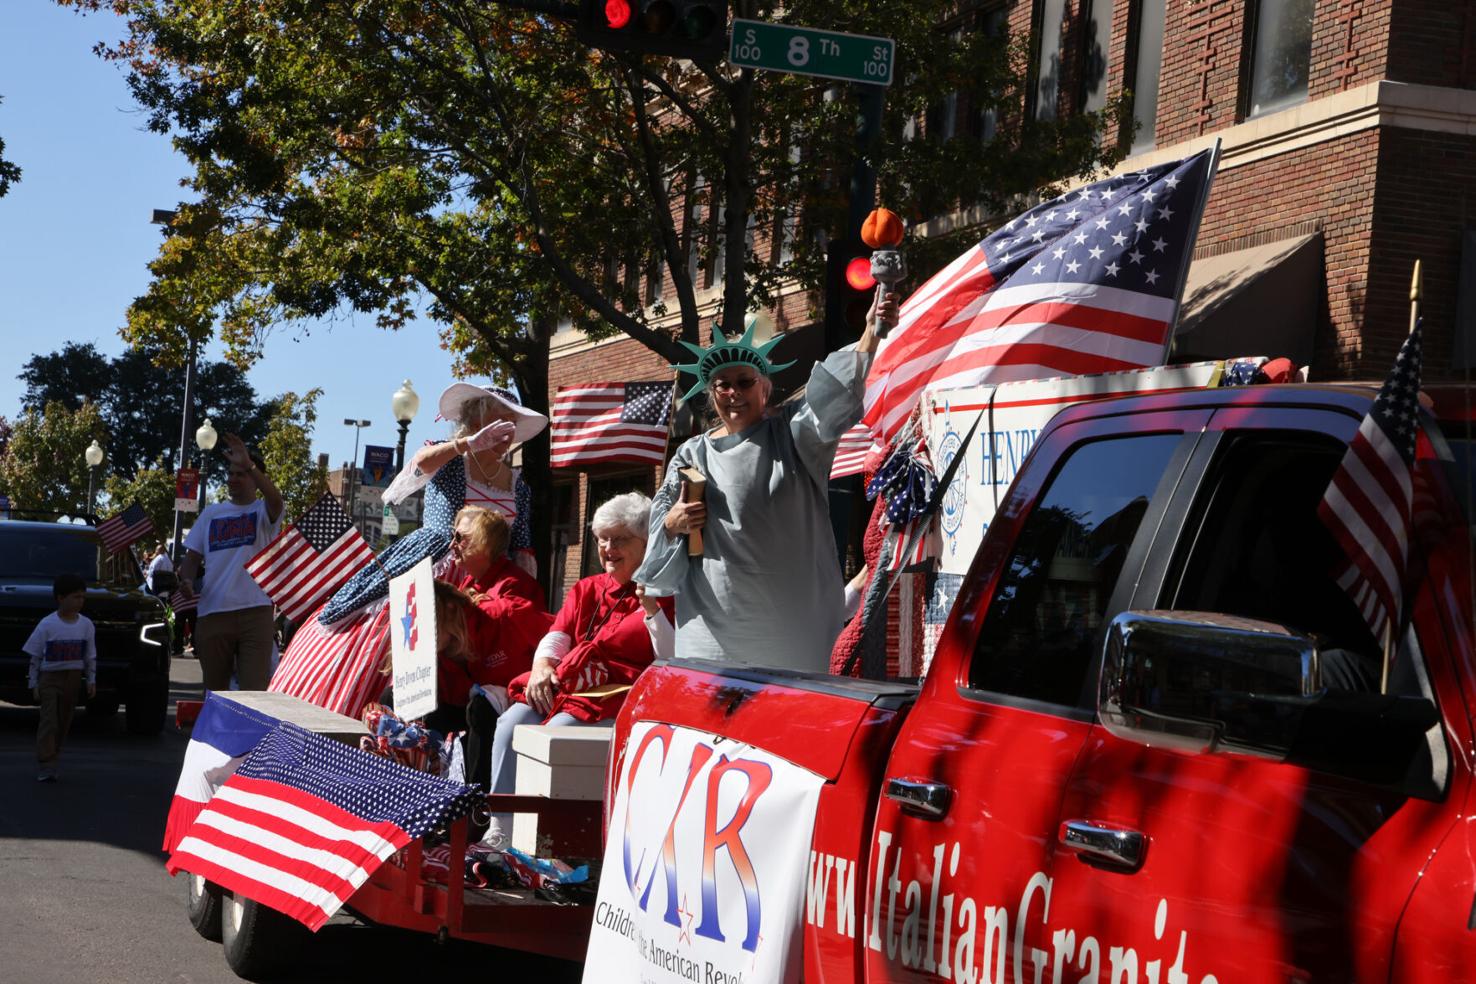 PHOTOS — Veterans Day parade in downtown Waco Nov. 11, 2021